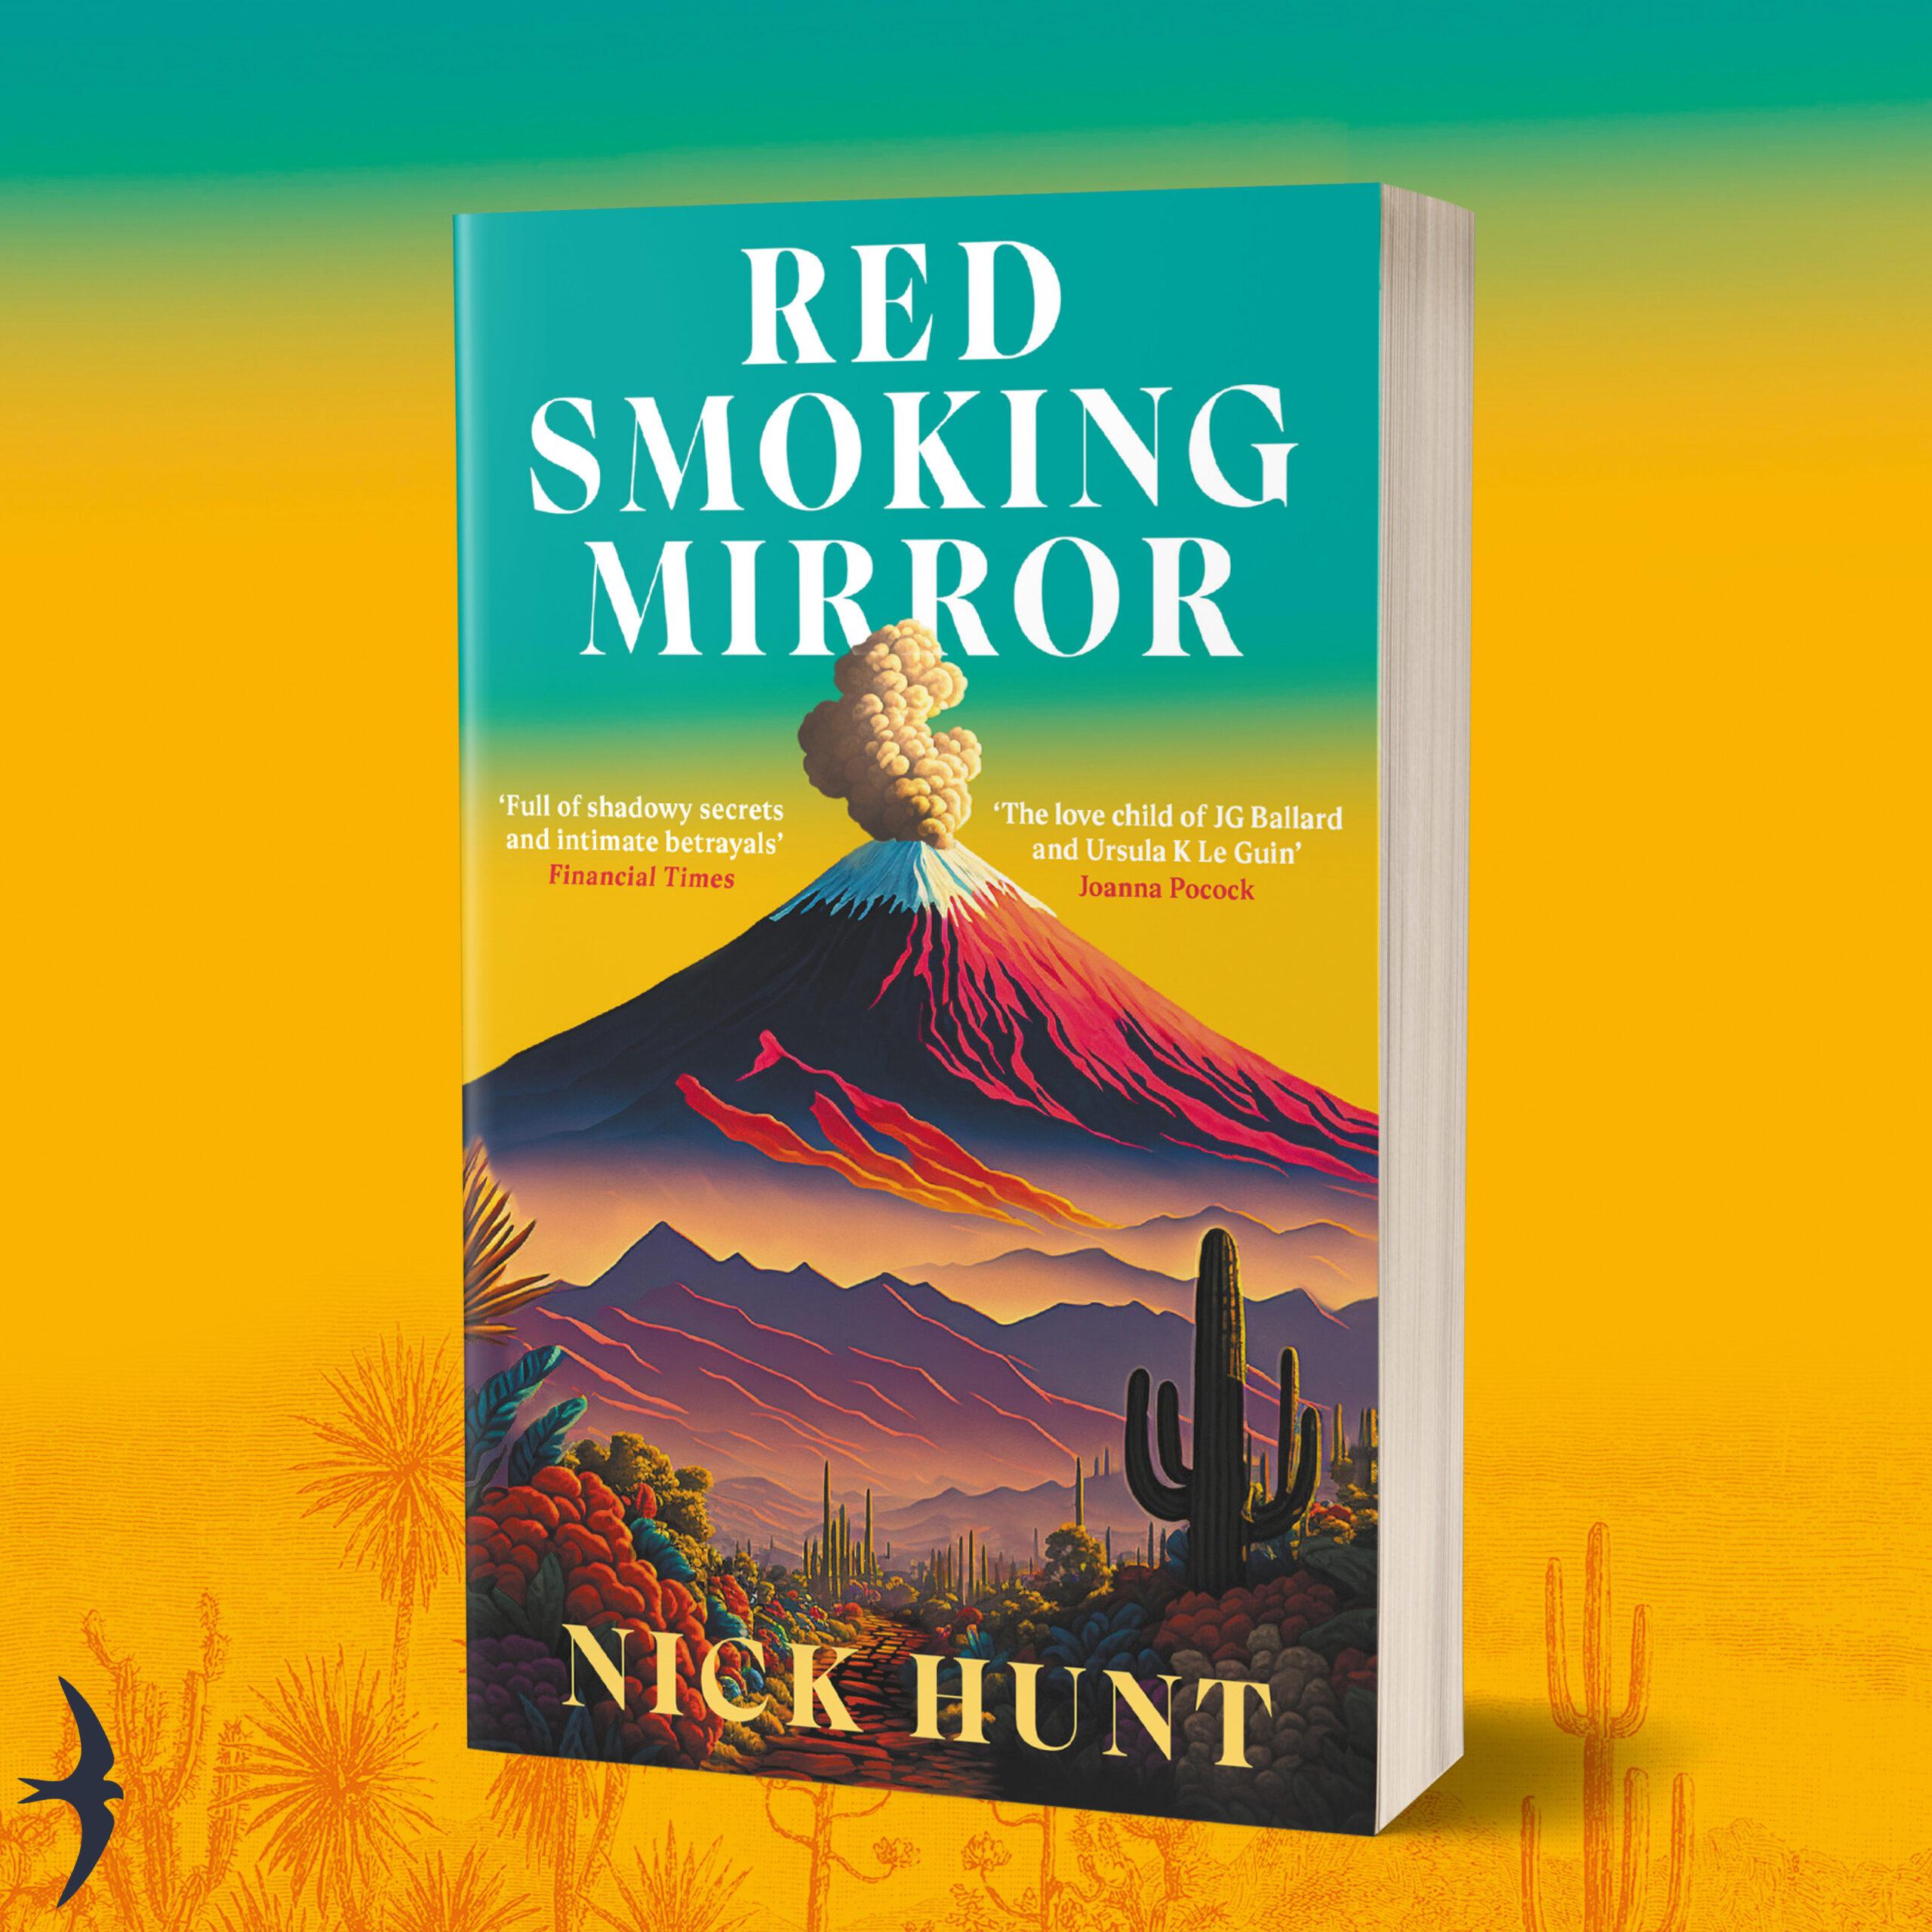 Red Smoking Mirror in paperback